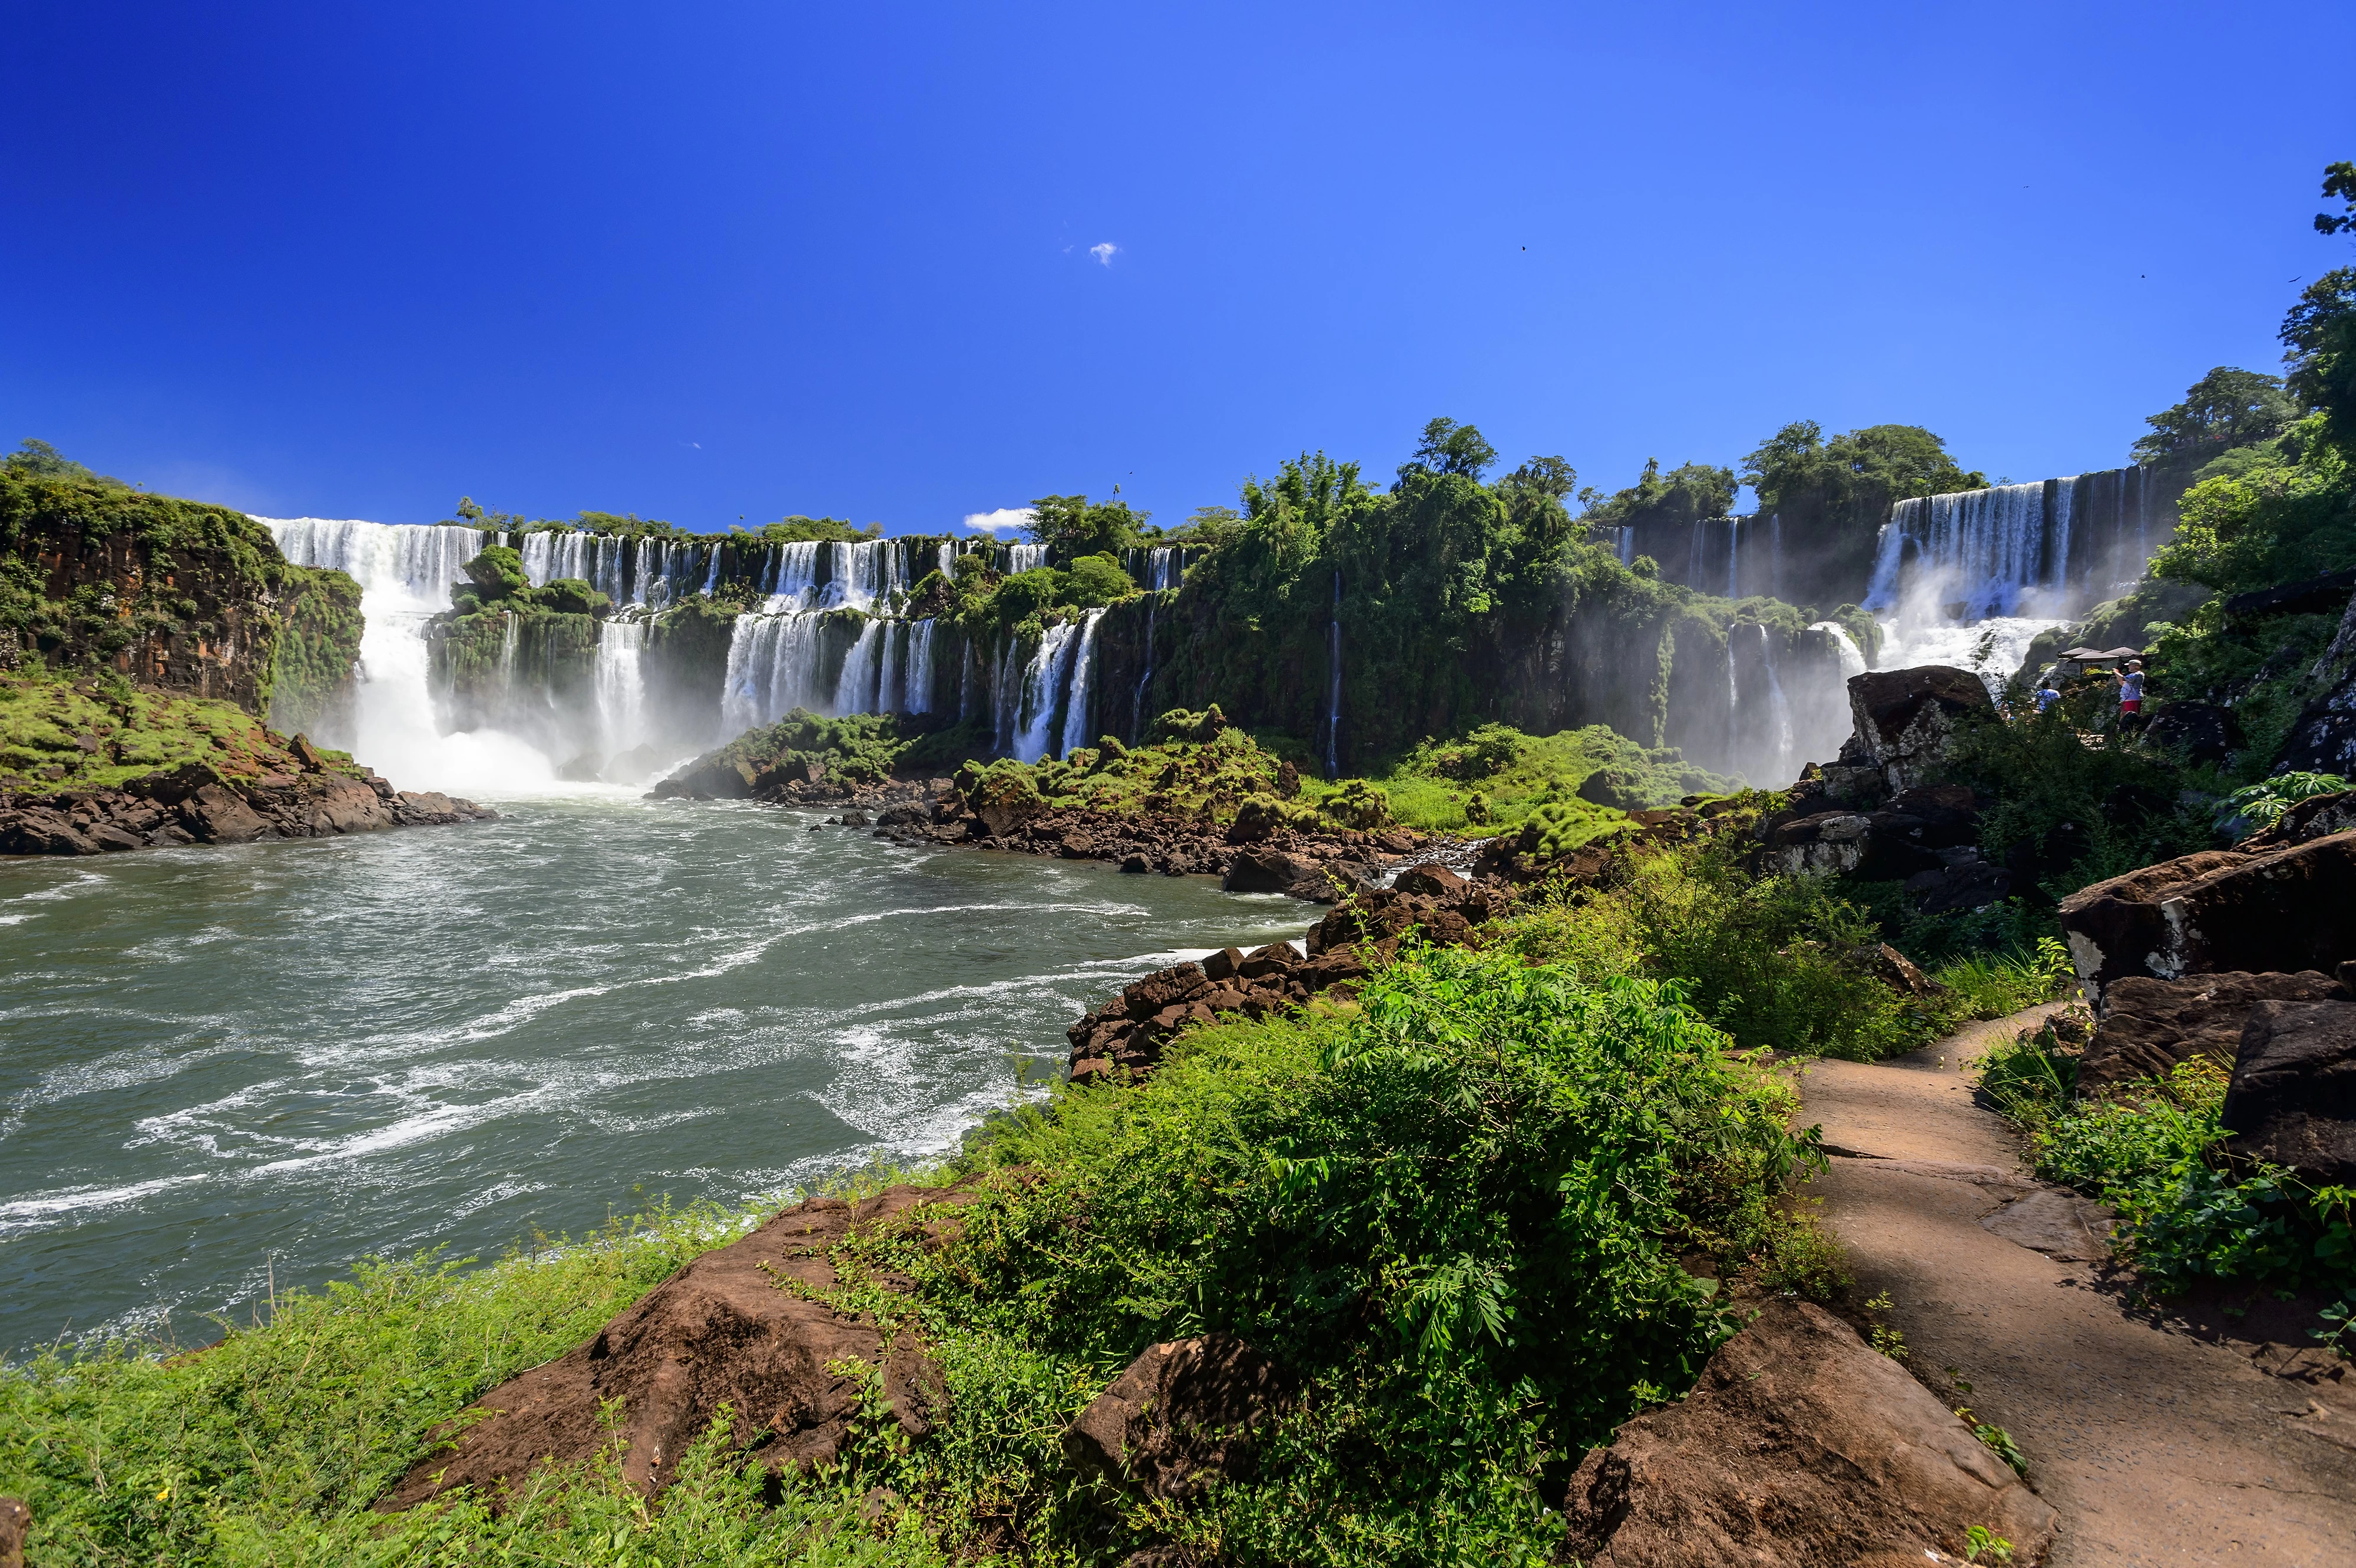 Explorando la belleza natural de las Cataratas del Iguazú, Argentina